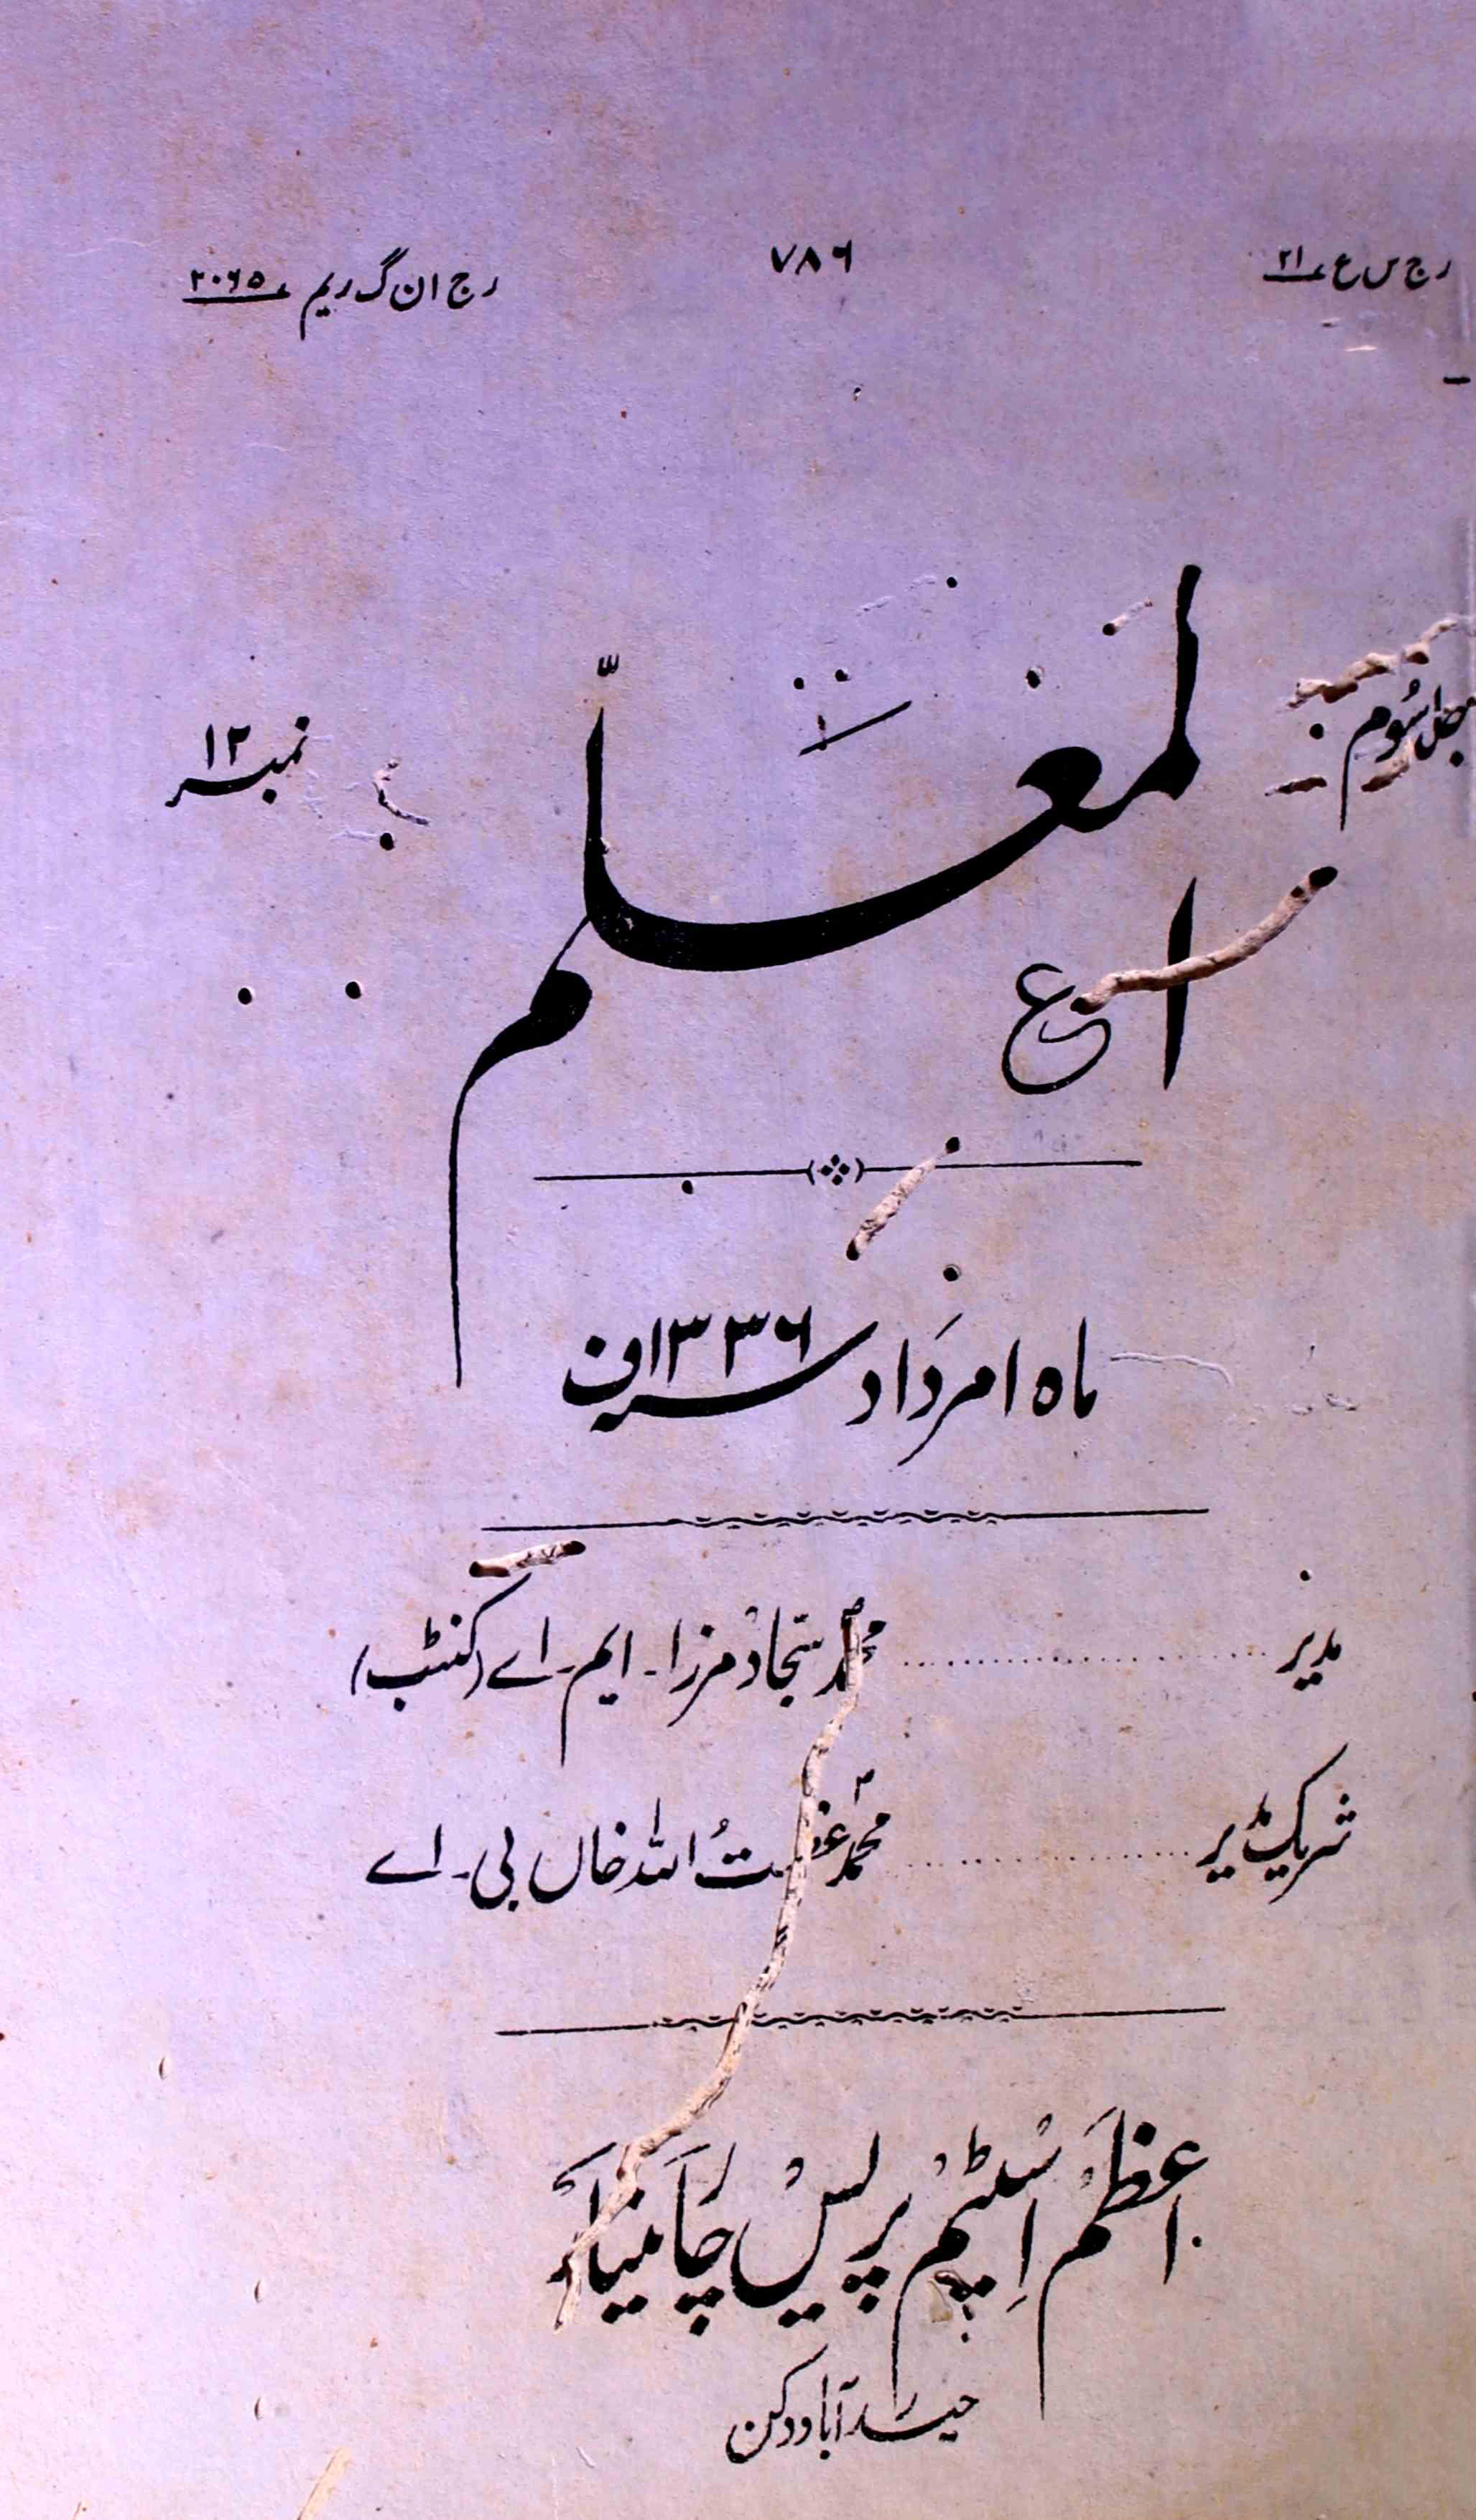 Al-Muallim Jild-3 No.12 Amardad - Hyd-Shumara Number-012